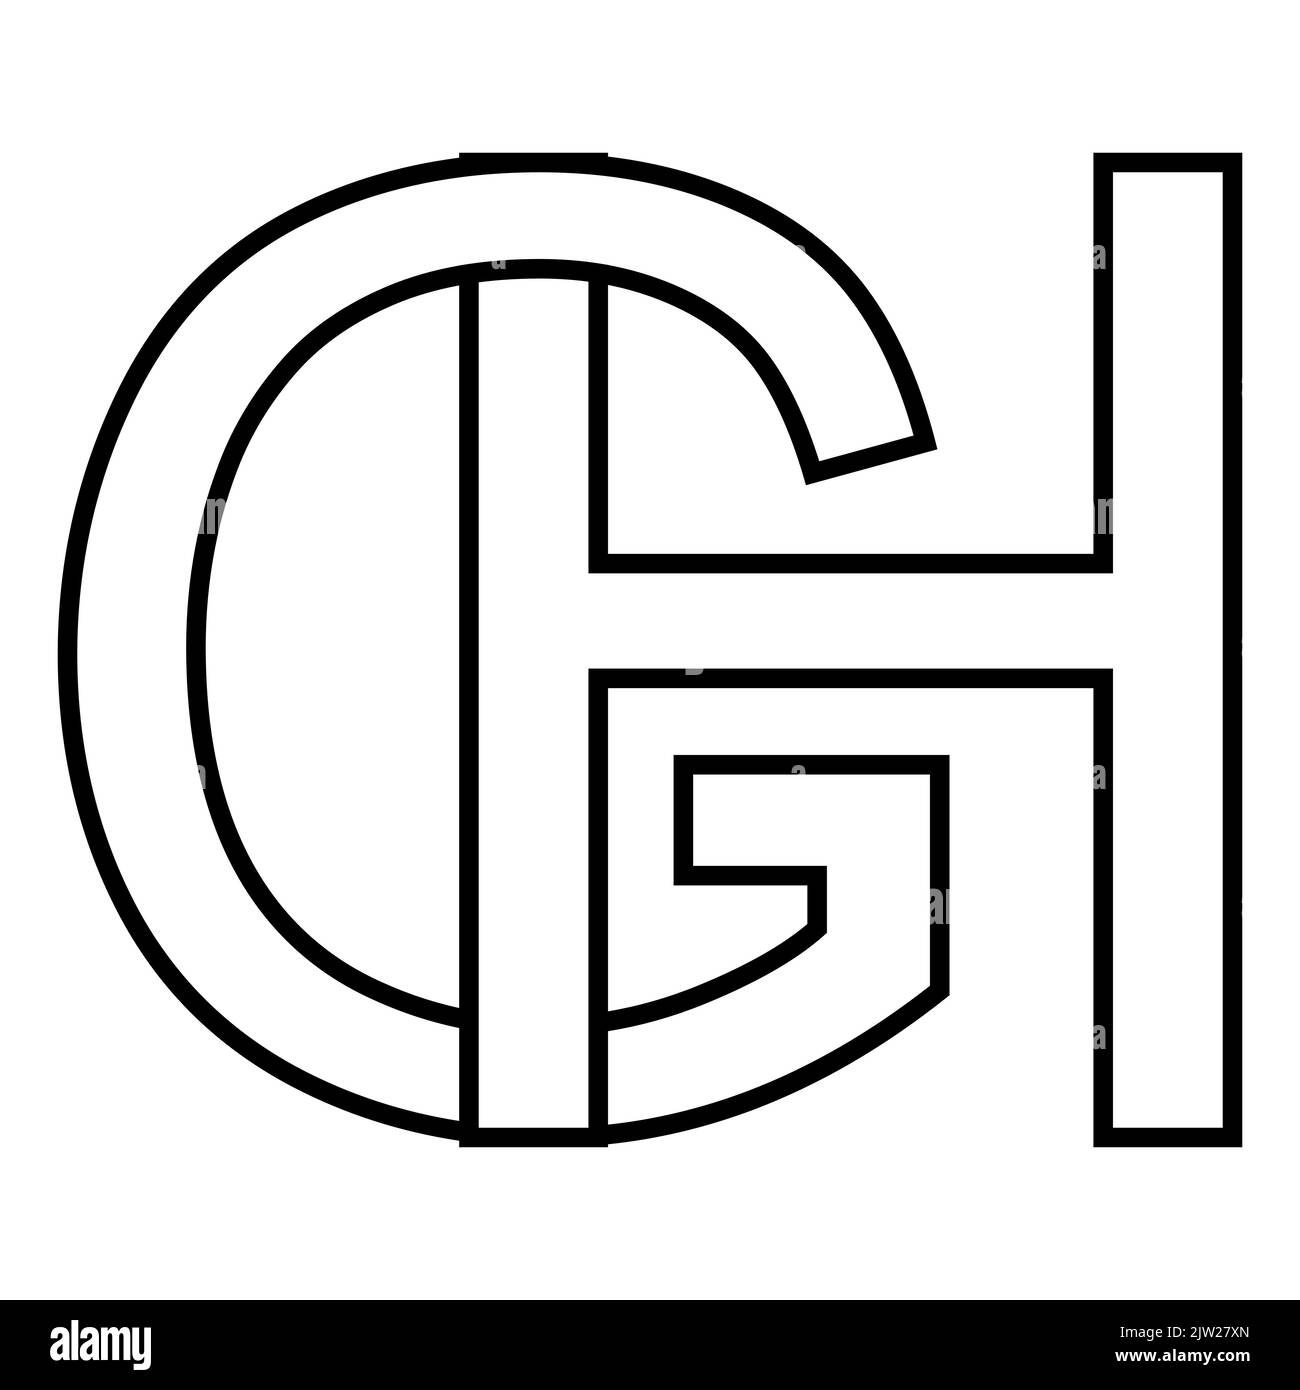 Gh logo Schwarzweiß-Stockfotos und -bilder - Alamy